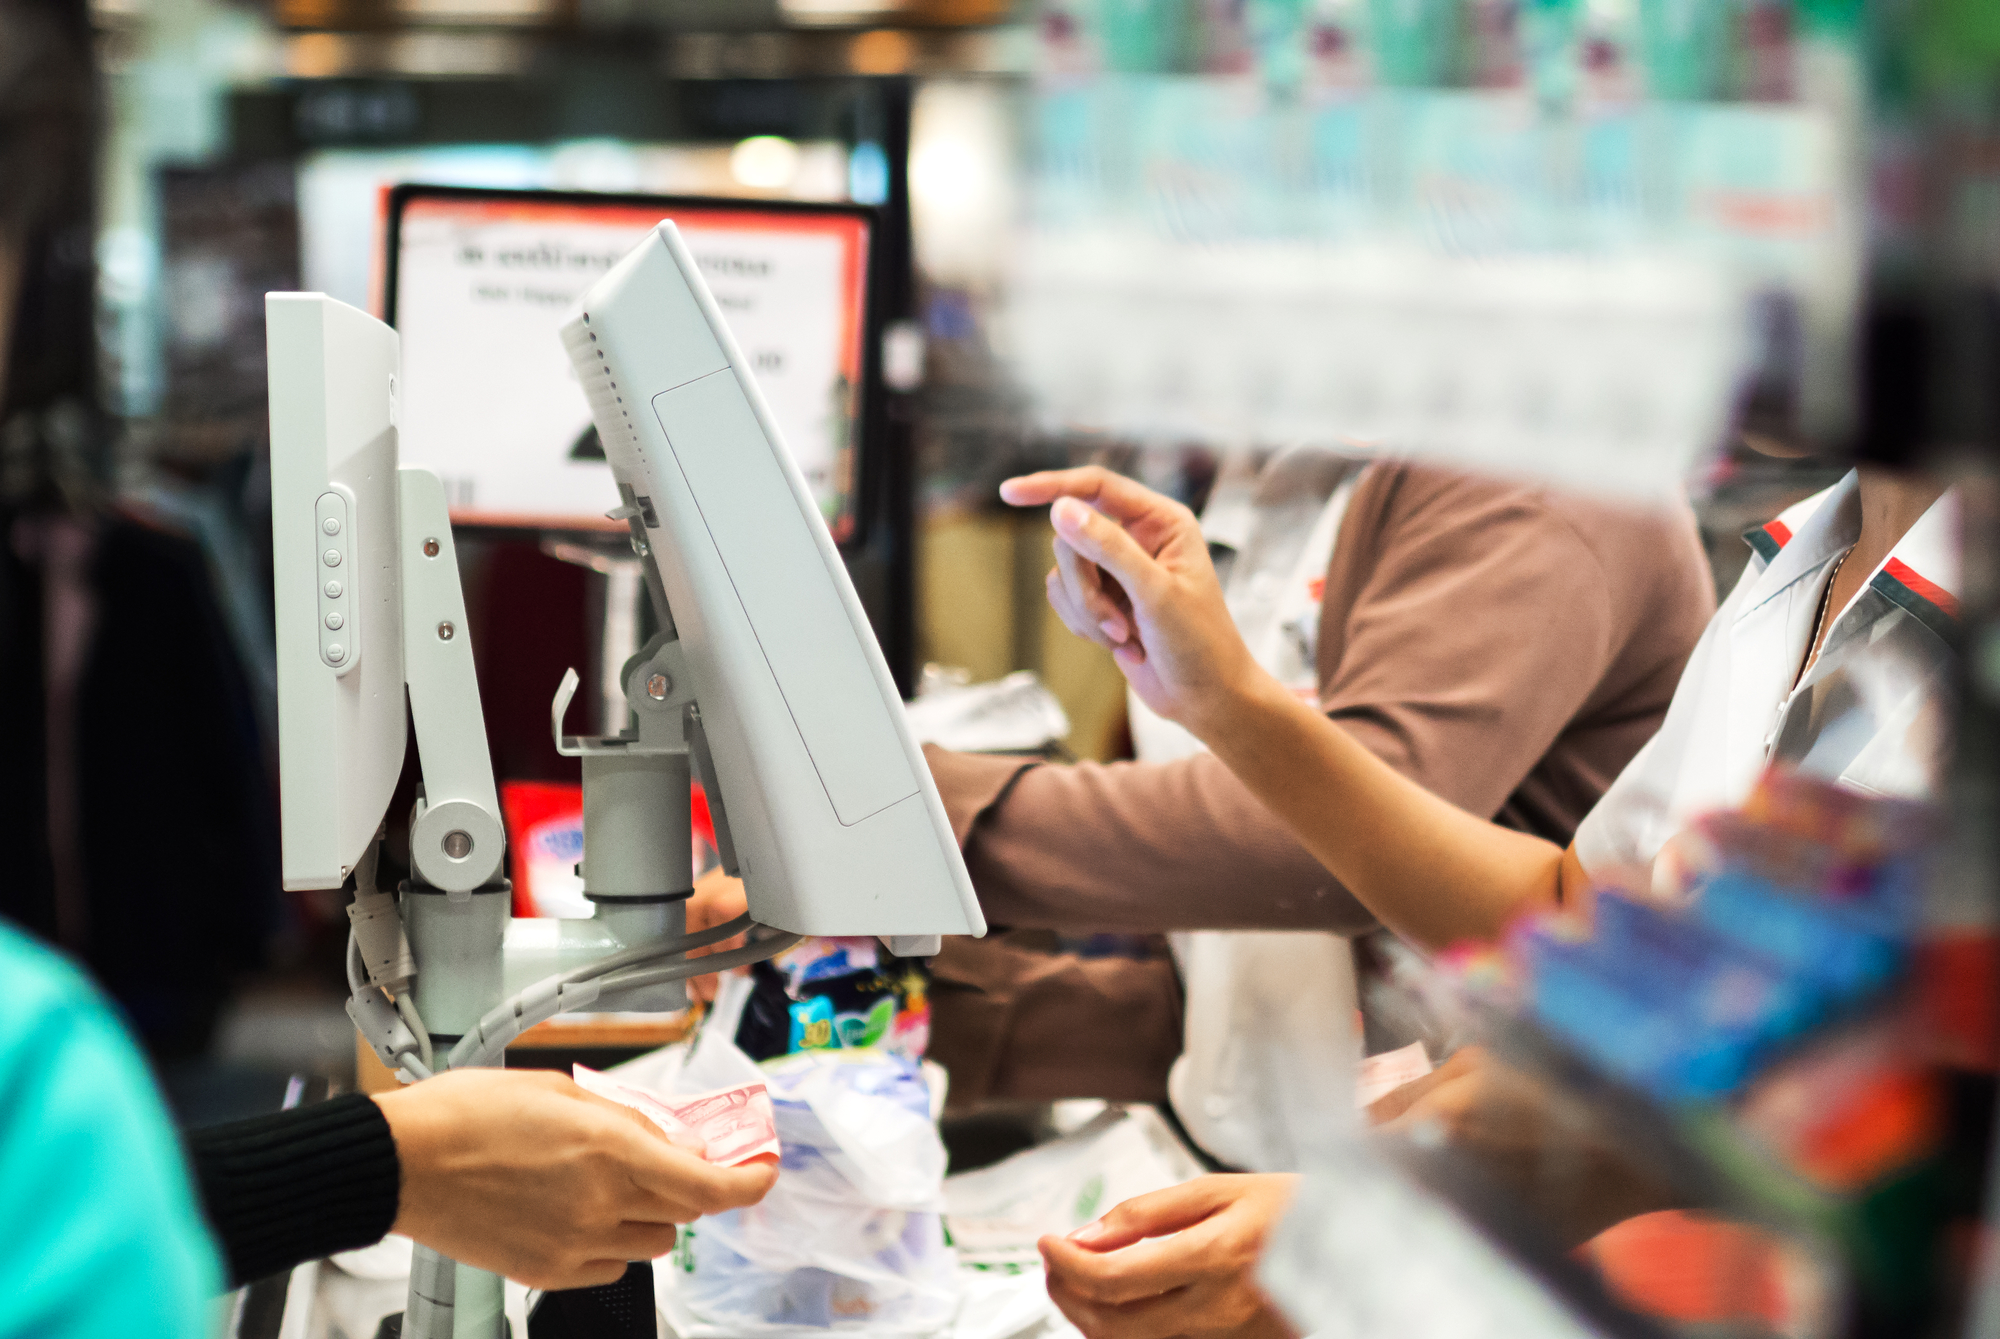 РБК: Сбербанк начнет принимать платежи за ЖКУ и услуги связи на кассах магазинов